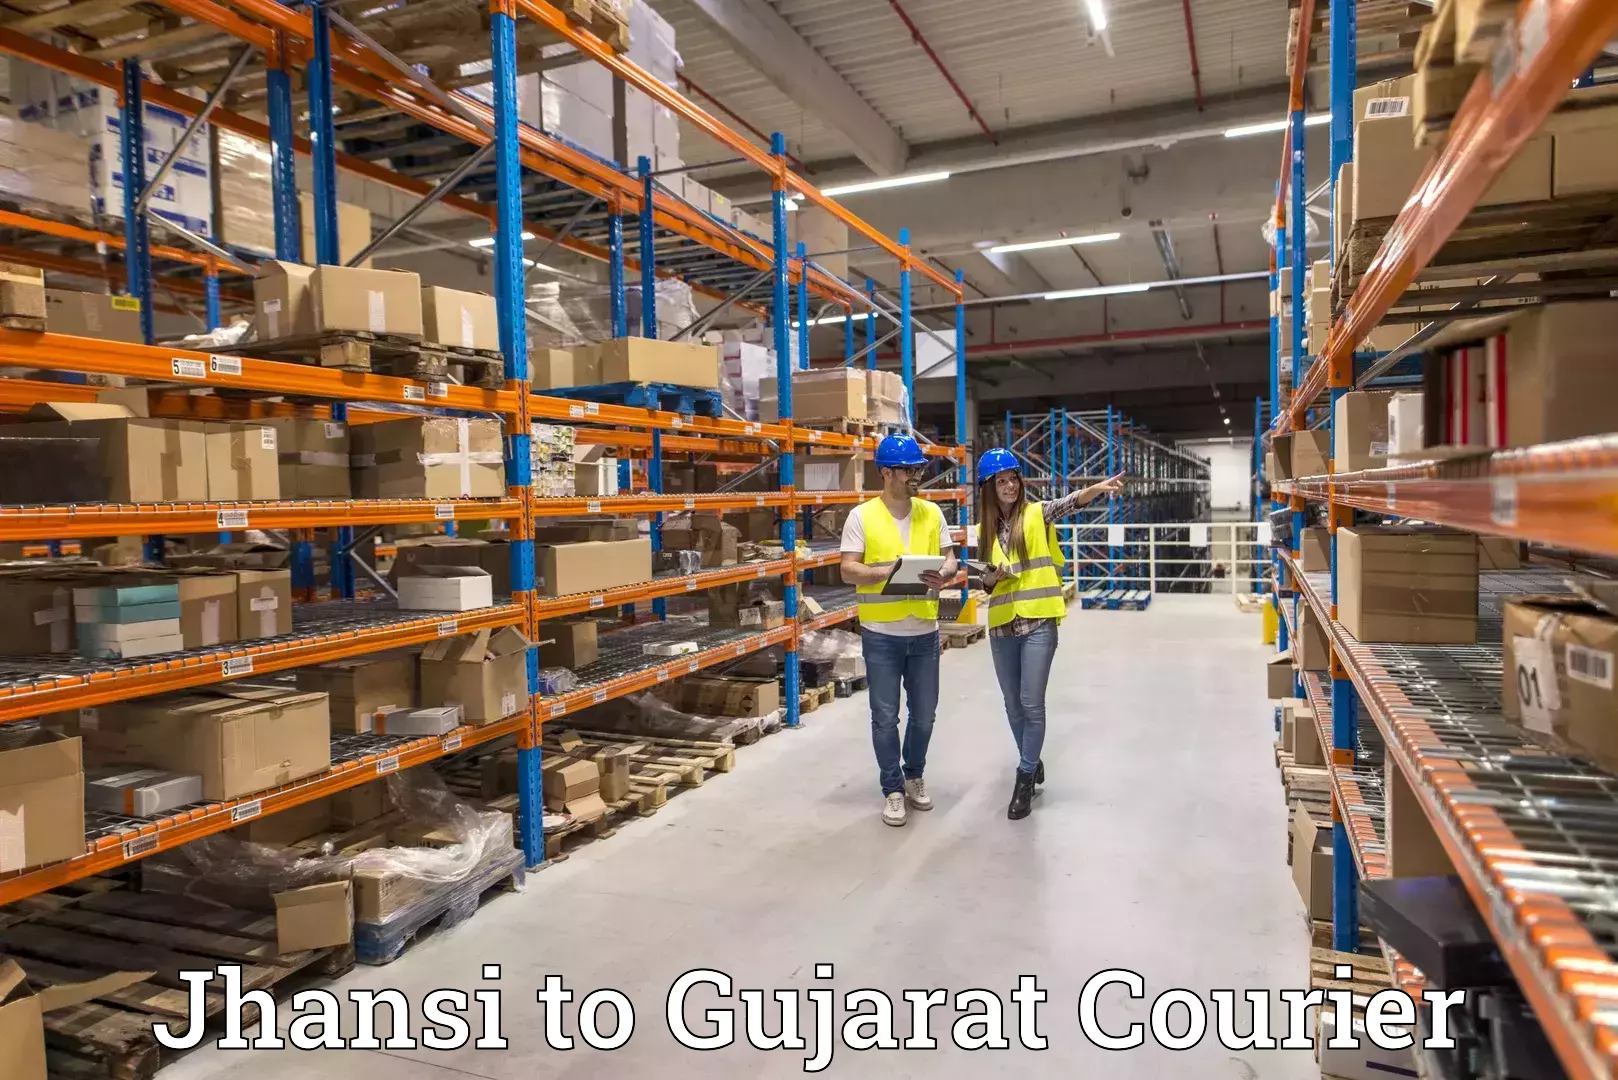 Customer-centric shipping Jhansi to Ahwa